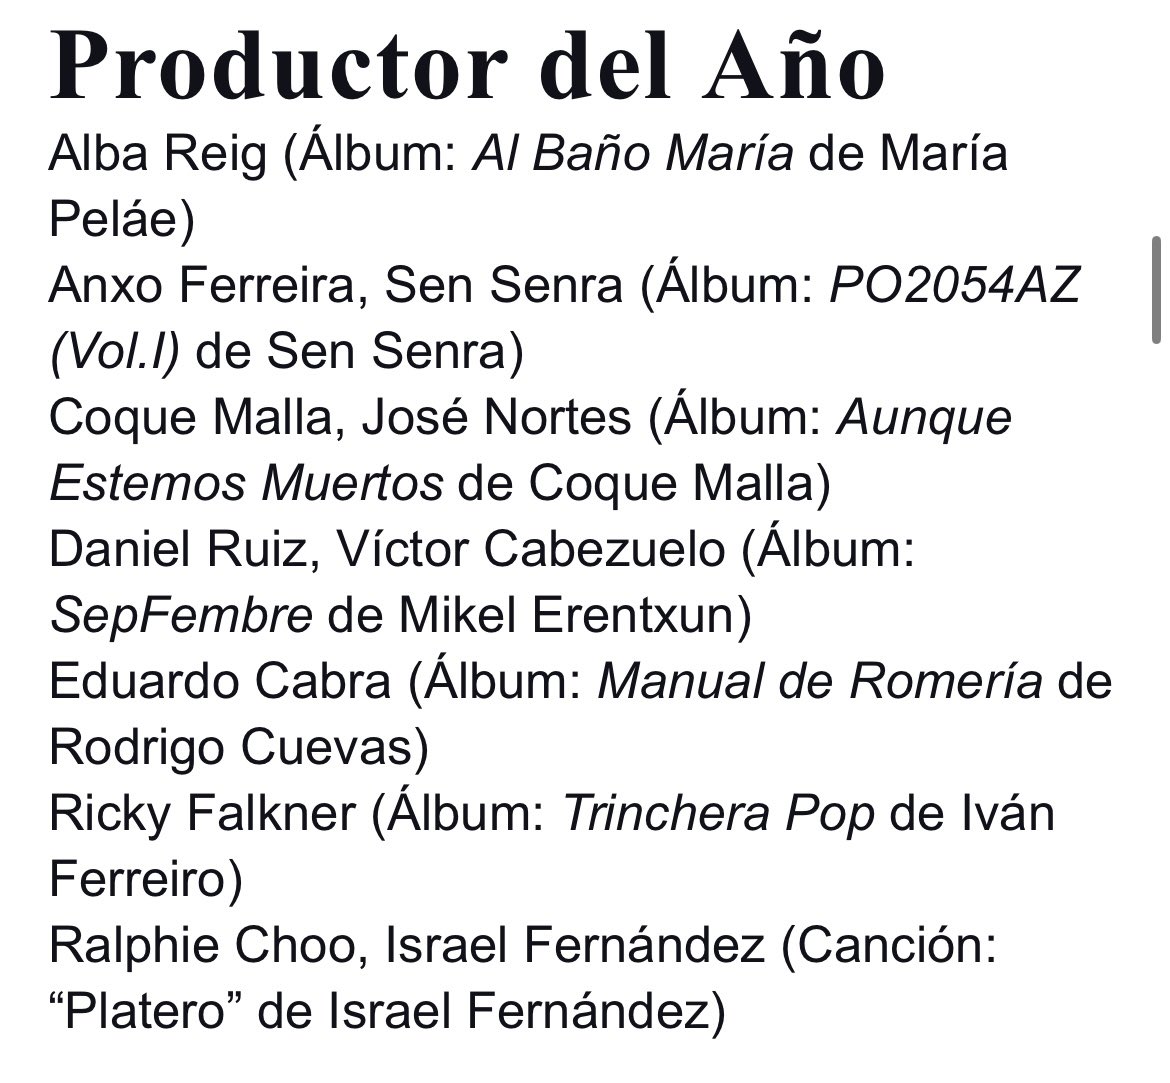 Alba Reig nominada como mejor productorA en los premios de la música española por AL BAÑO MARÍA. 
Salto de alegría, de amor y de orgullo!! 

Vamos a ponerle una A, que ya es hora! 
@AlbaSweetC 

#nominada #AlBañoMaria